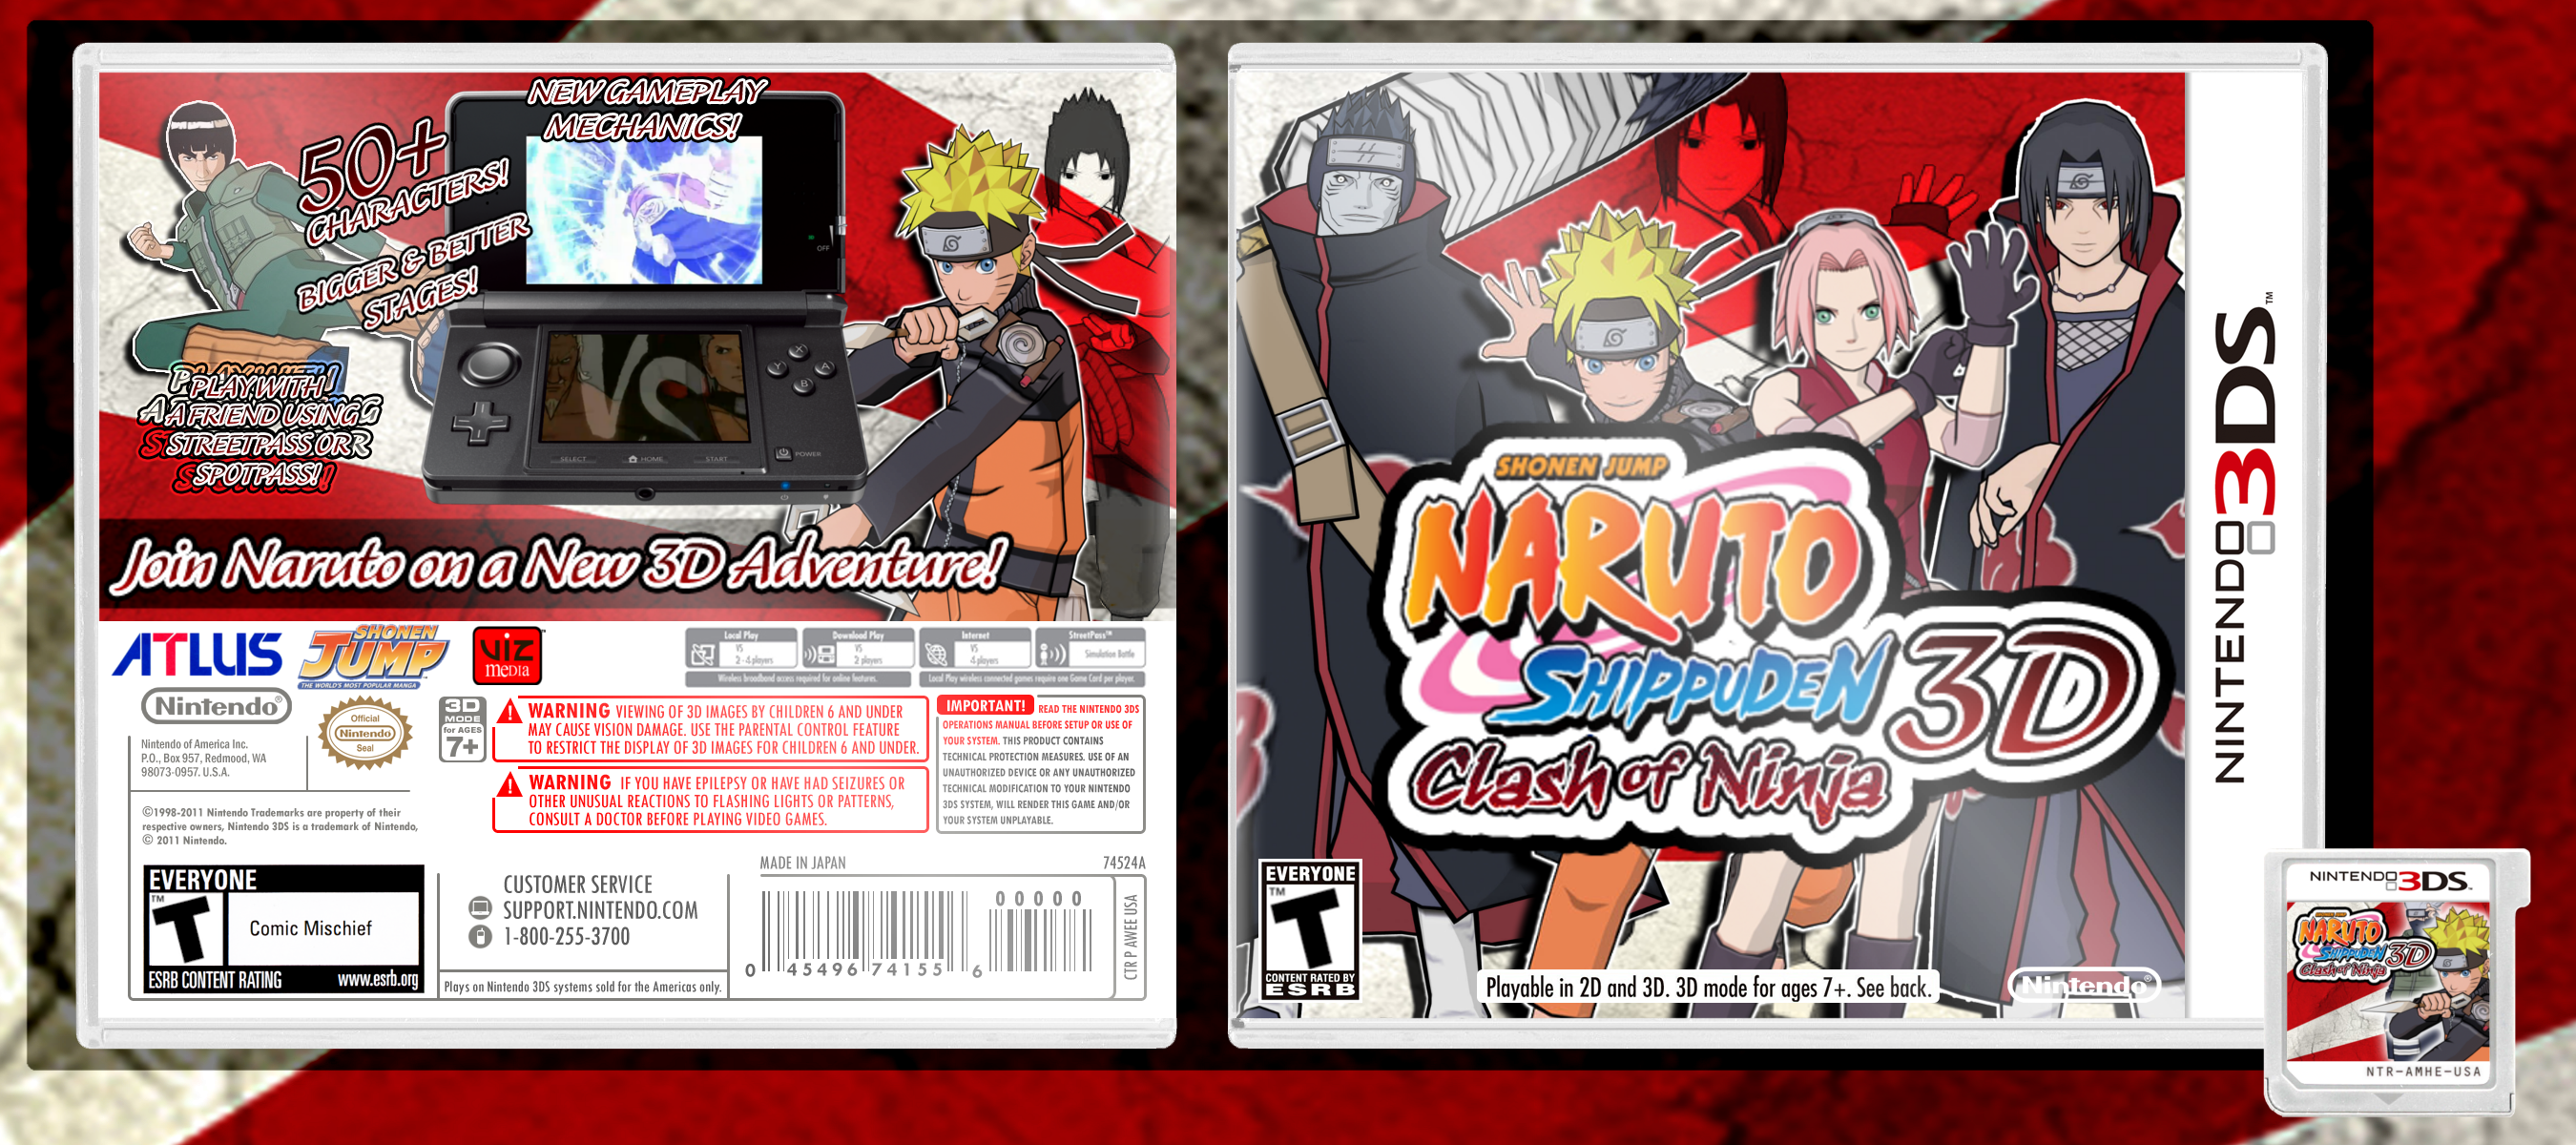 Naruto Shippuden Clash of Ninja 3D Nintendo 3DS Box Art